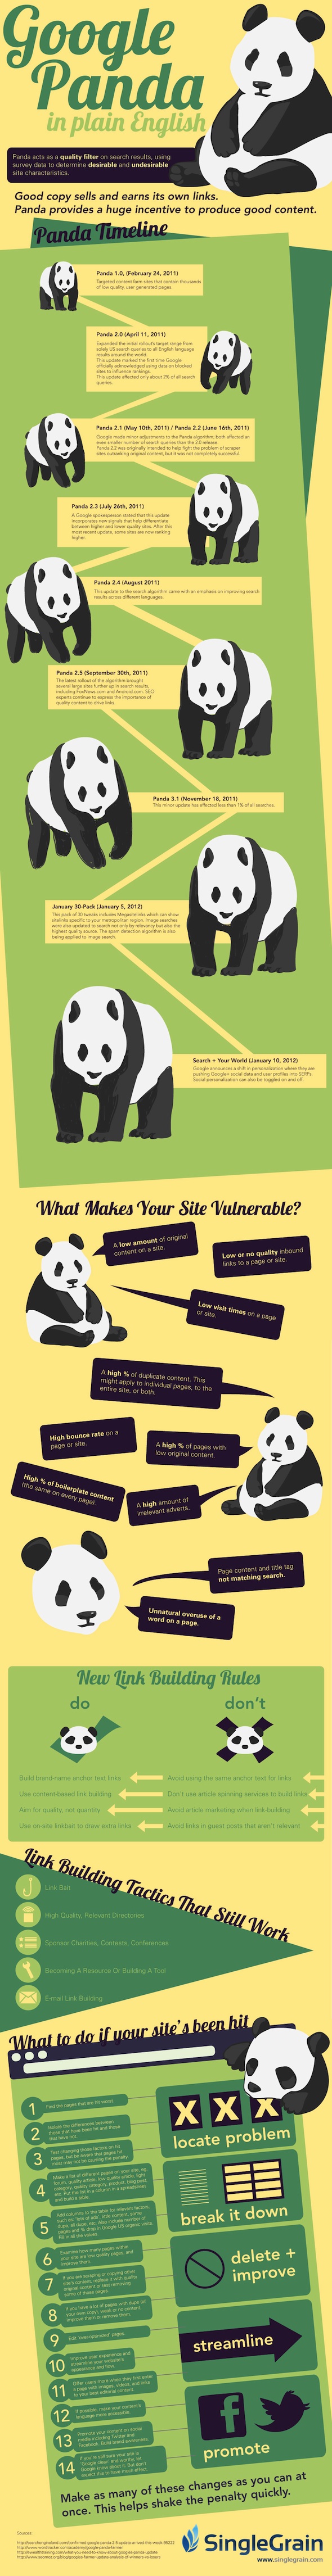 Google Panda Explained [INFOGRAPHIC]